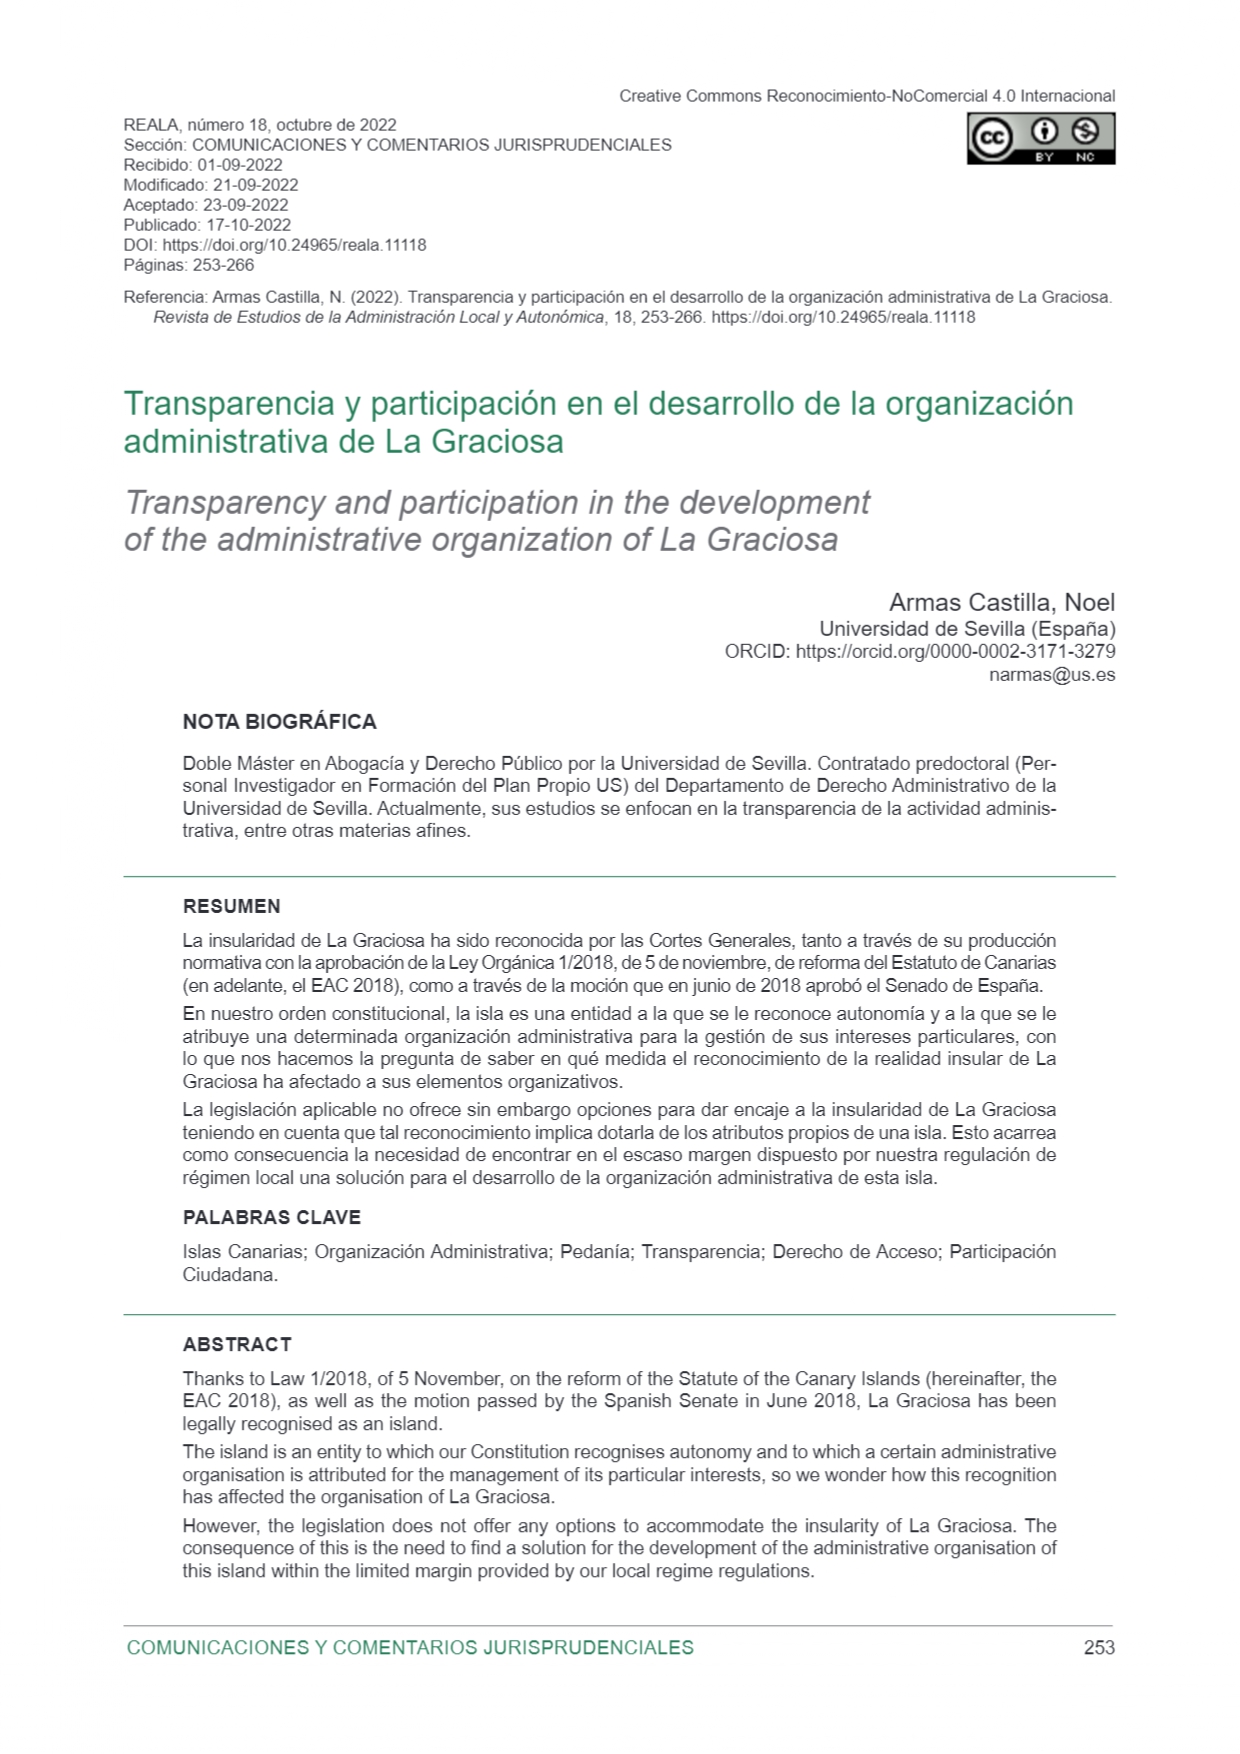 Transparencia y participación en el desarrollo de la organización administrativa de La Graciosa